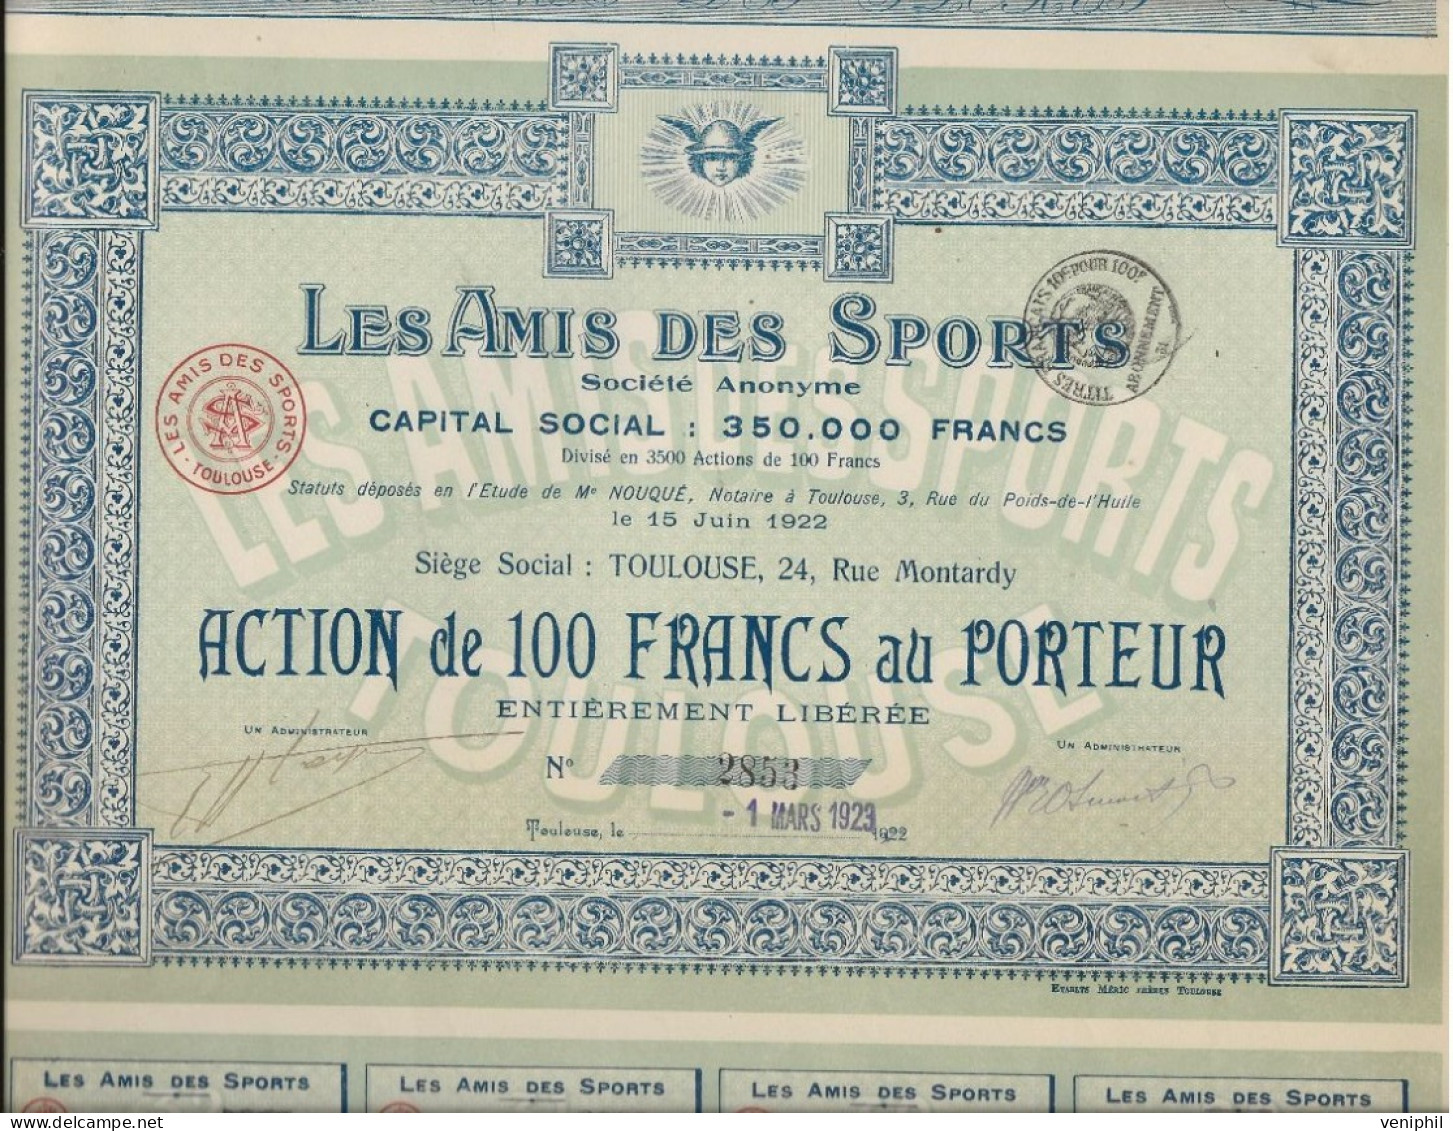 LES AMIS DES SPORTS -LOT DE 2 ACTIONS DE 100 FRANCS  -- ANNEE 1923 - Sports